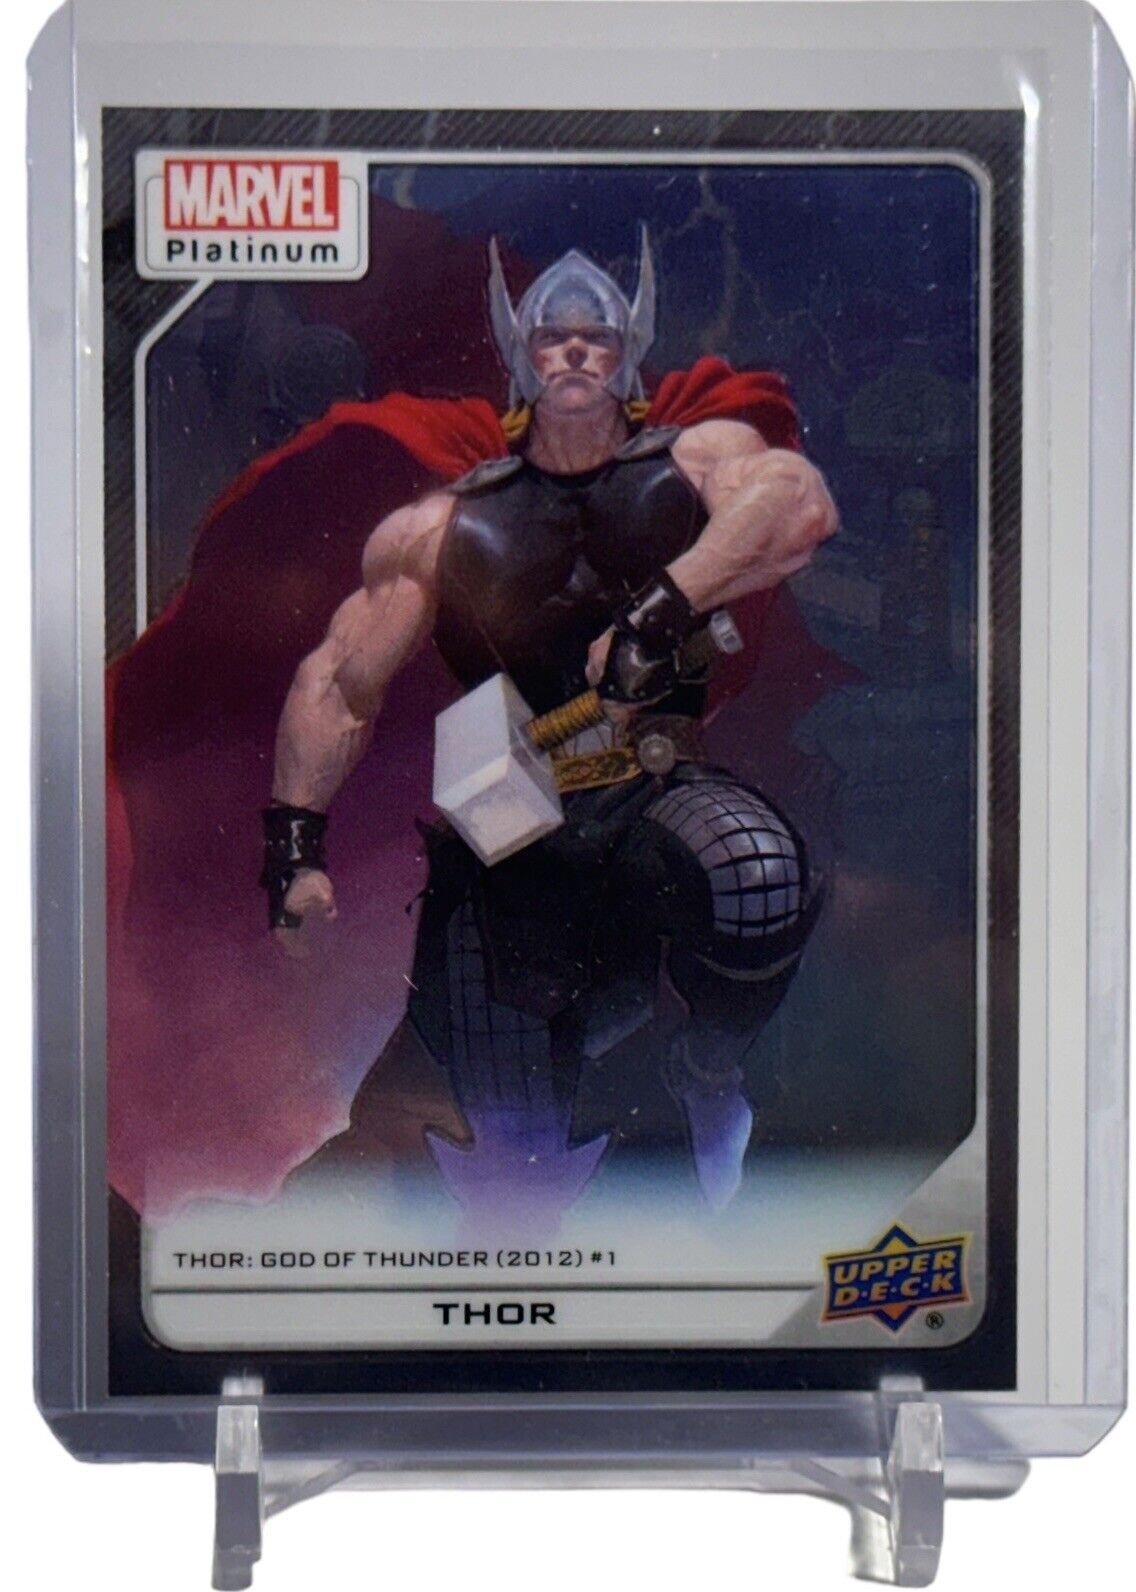 2023 Upper Deck Marvel Platinum Thor High Series Card #134 W/Top Loader